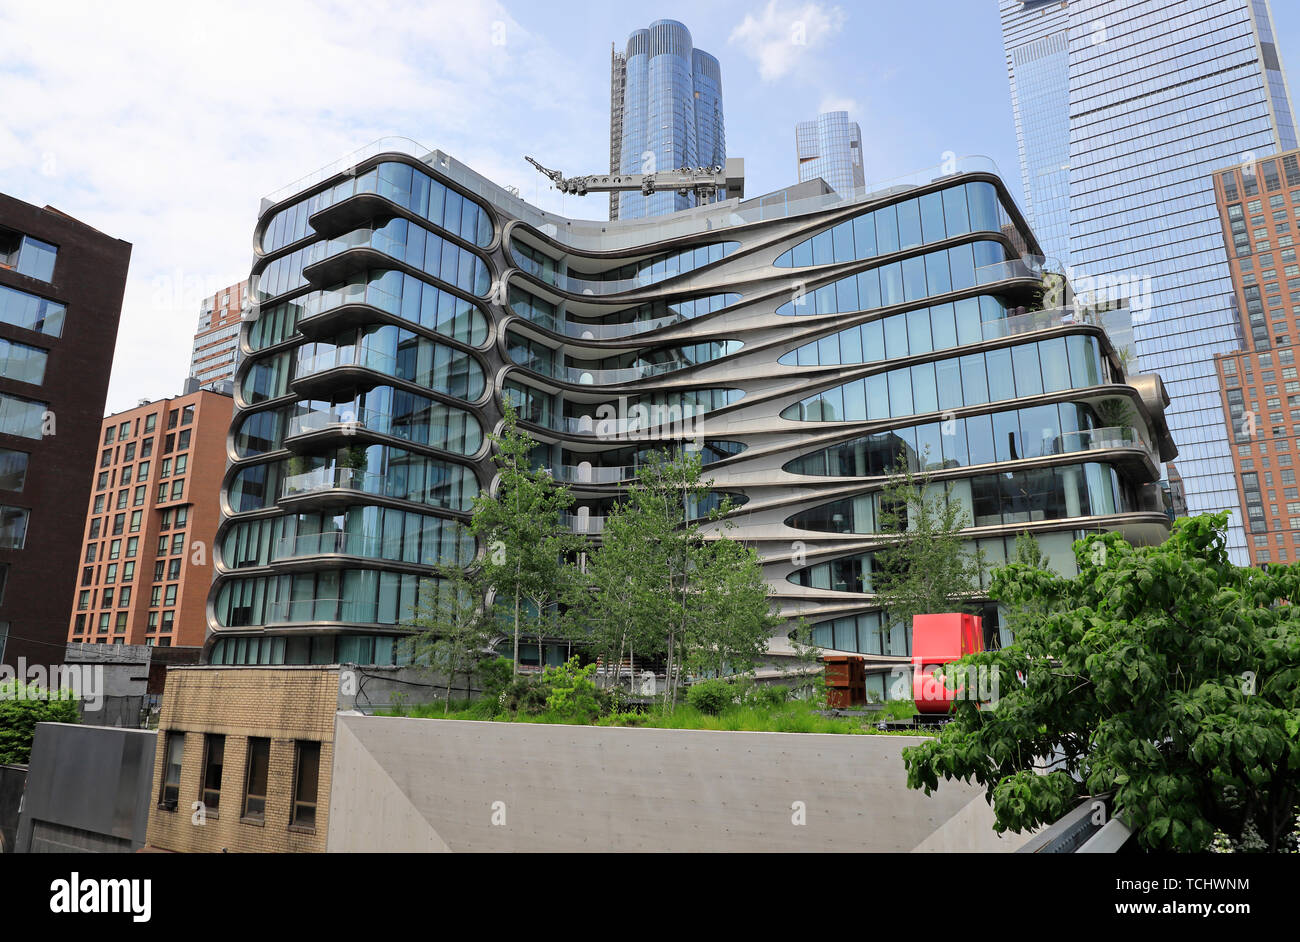 La 520 West 28th Street Building, un immeuble d'appartements de luxe conçu par Zaha Hadid à côté du parc High Line à Manhattan.New York City.USA Banque D'Images